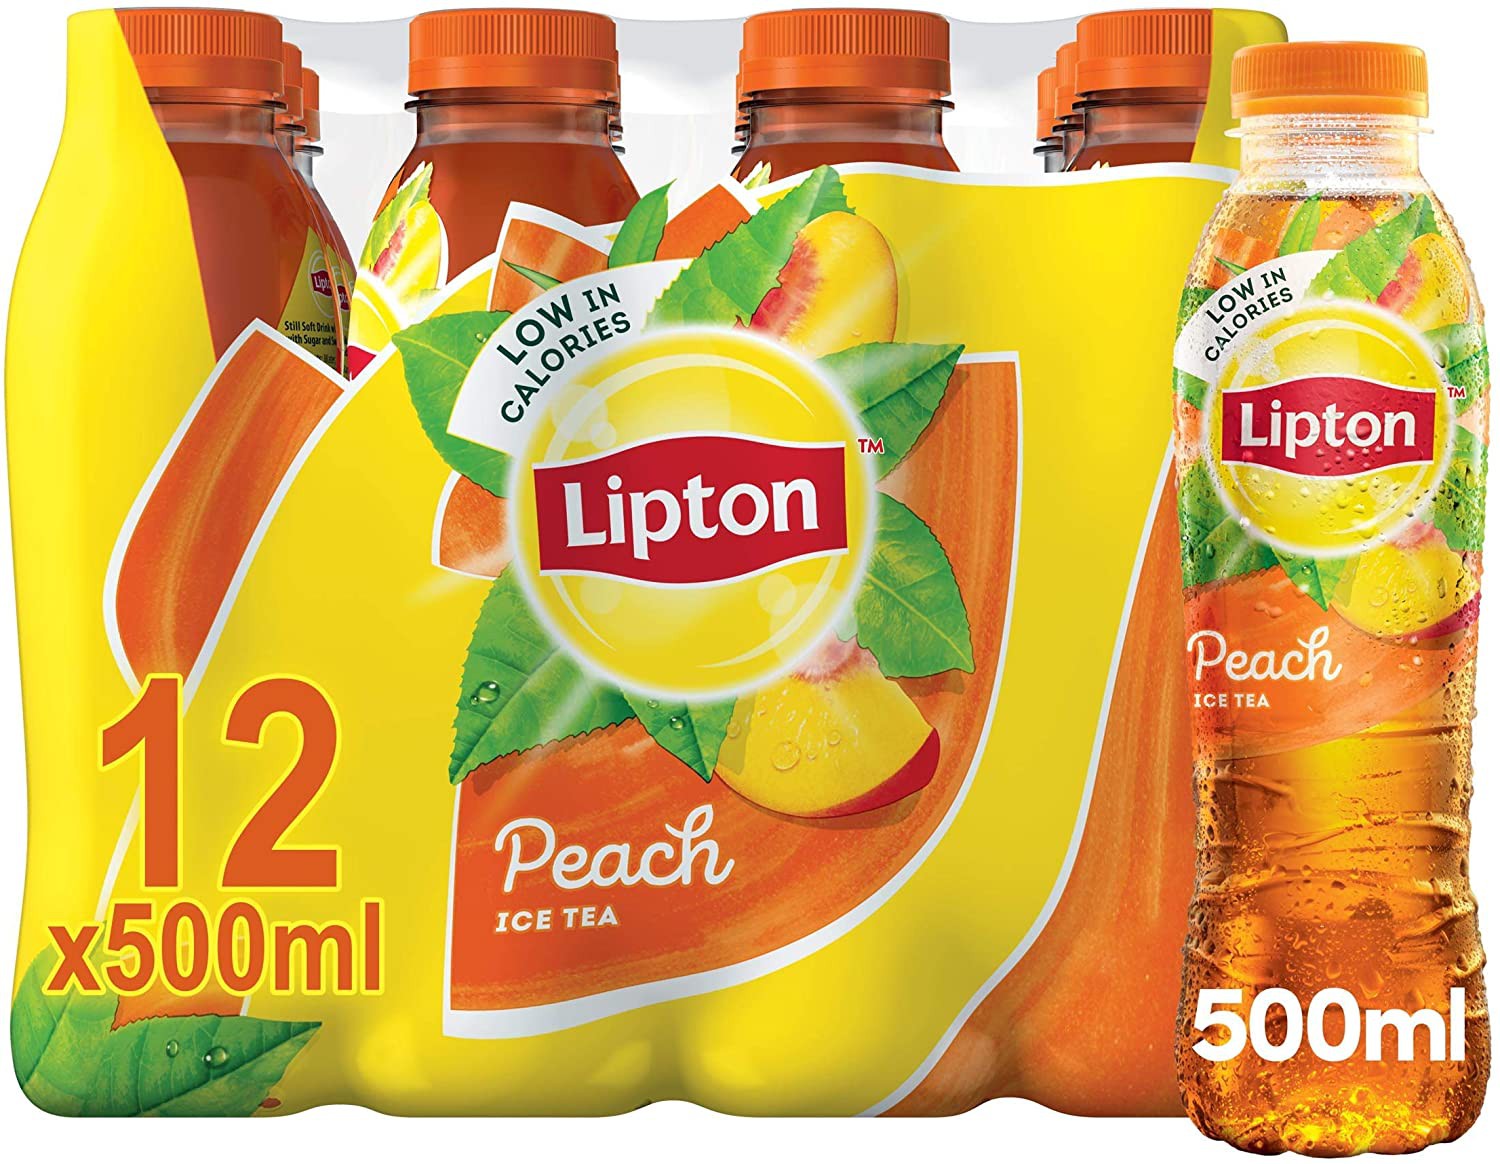 Lipton+Ice+Tea+Peach+case+of+12